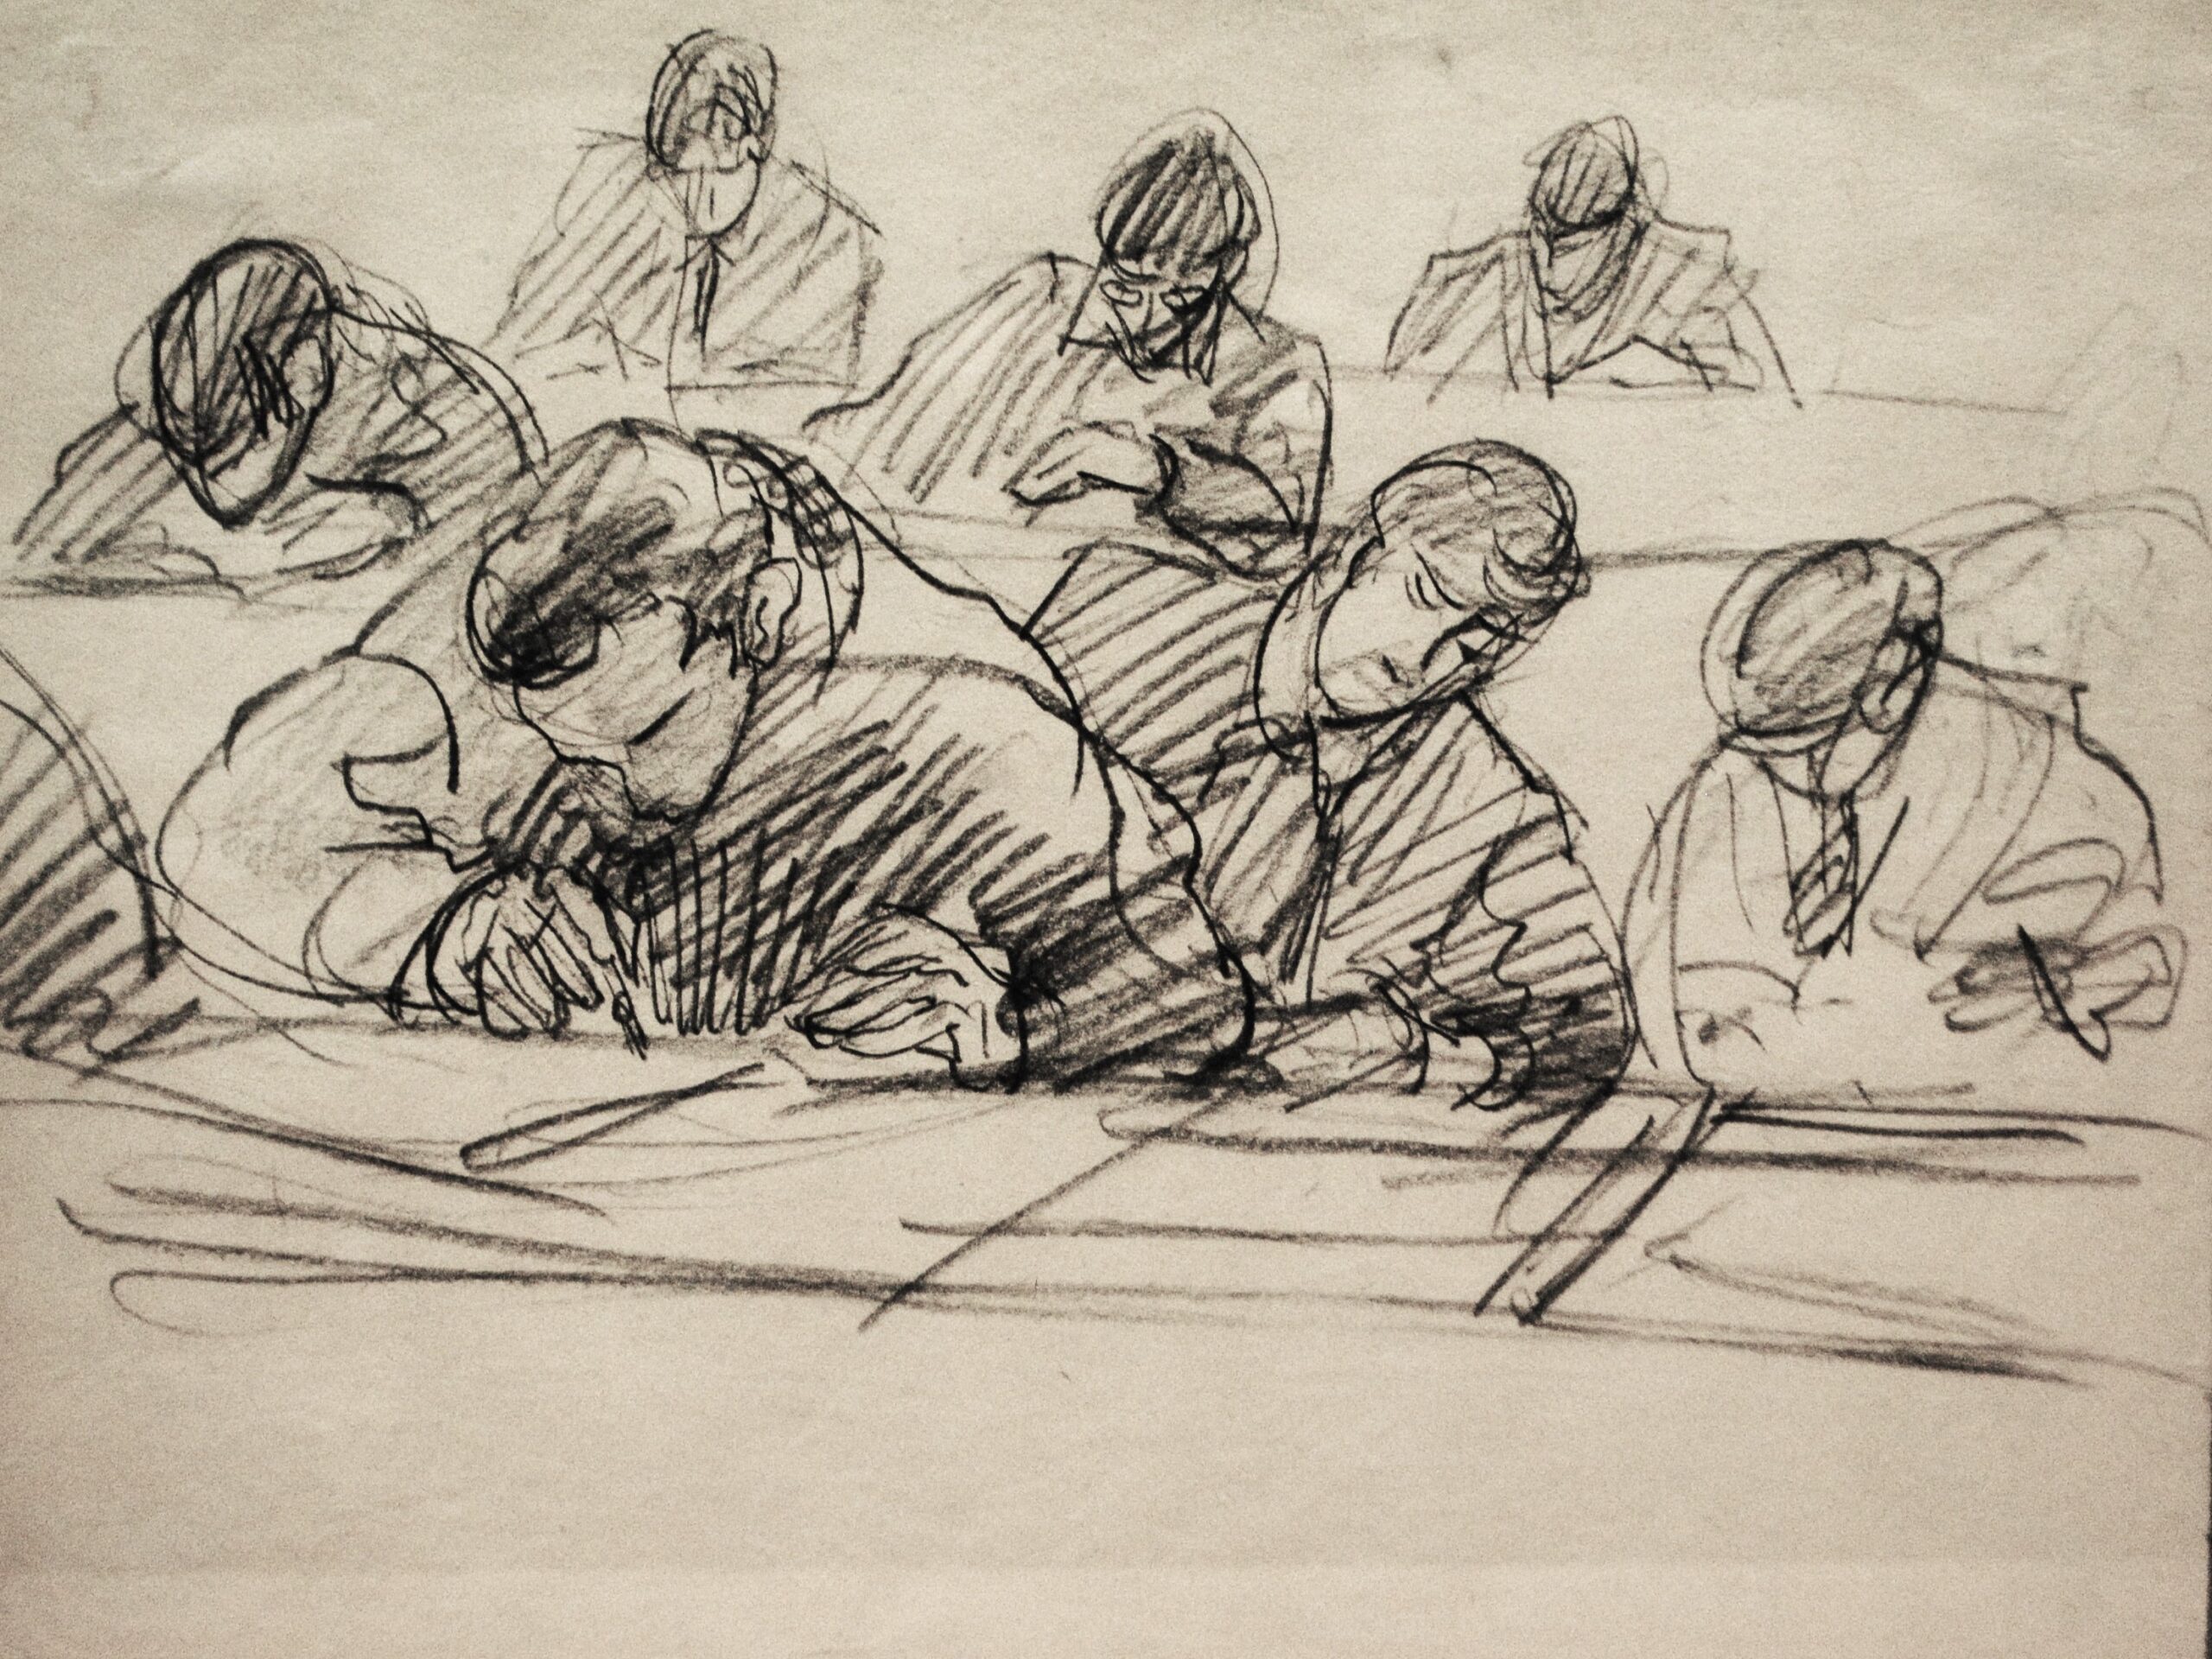 Dibujo de José Manaut titulado Gente escribiendo, 1933. Carboncillo sobre papel.